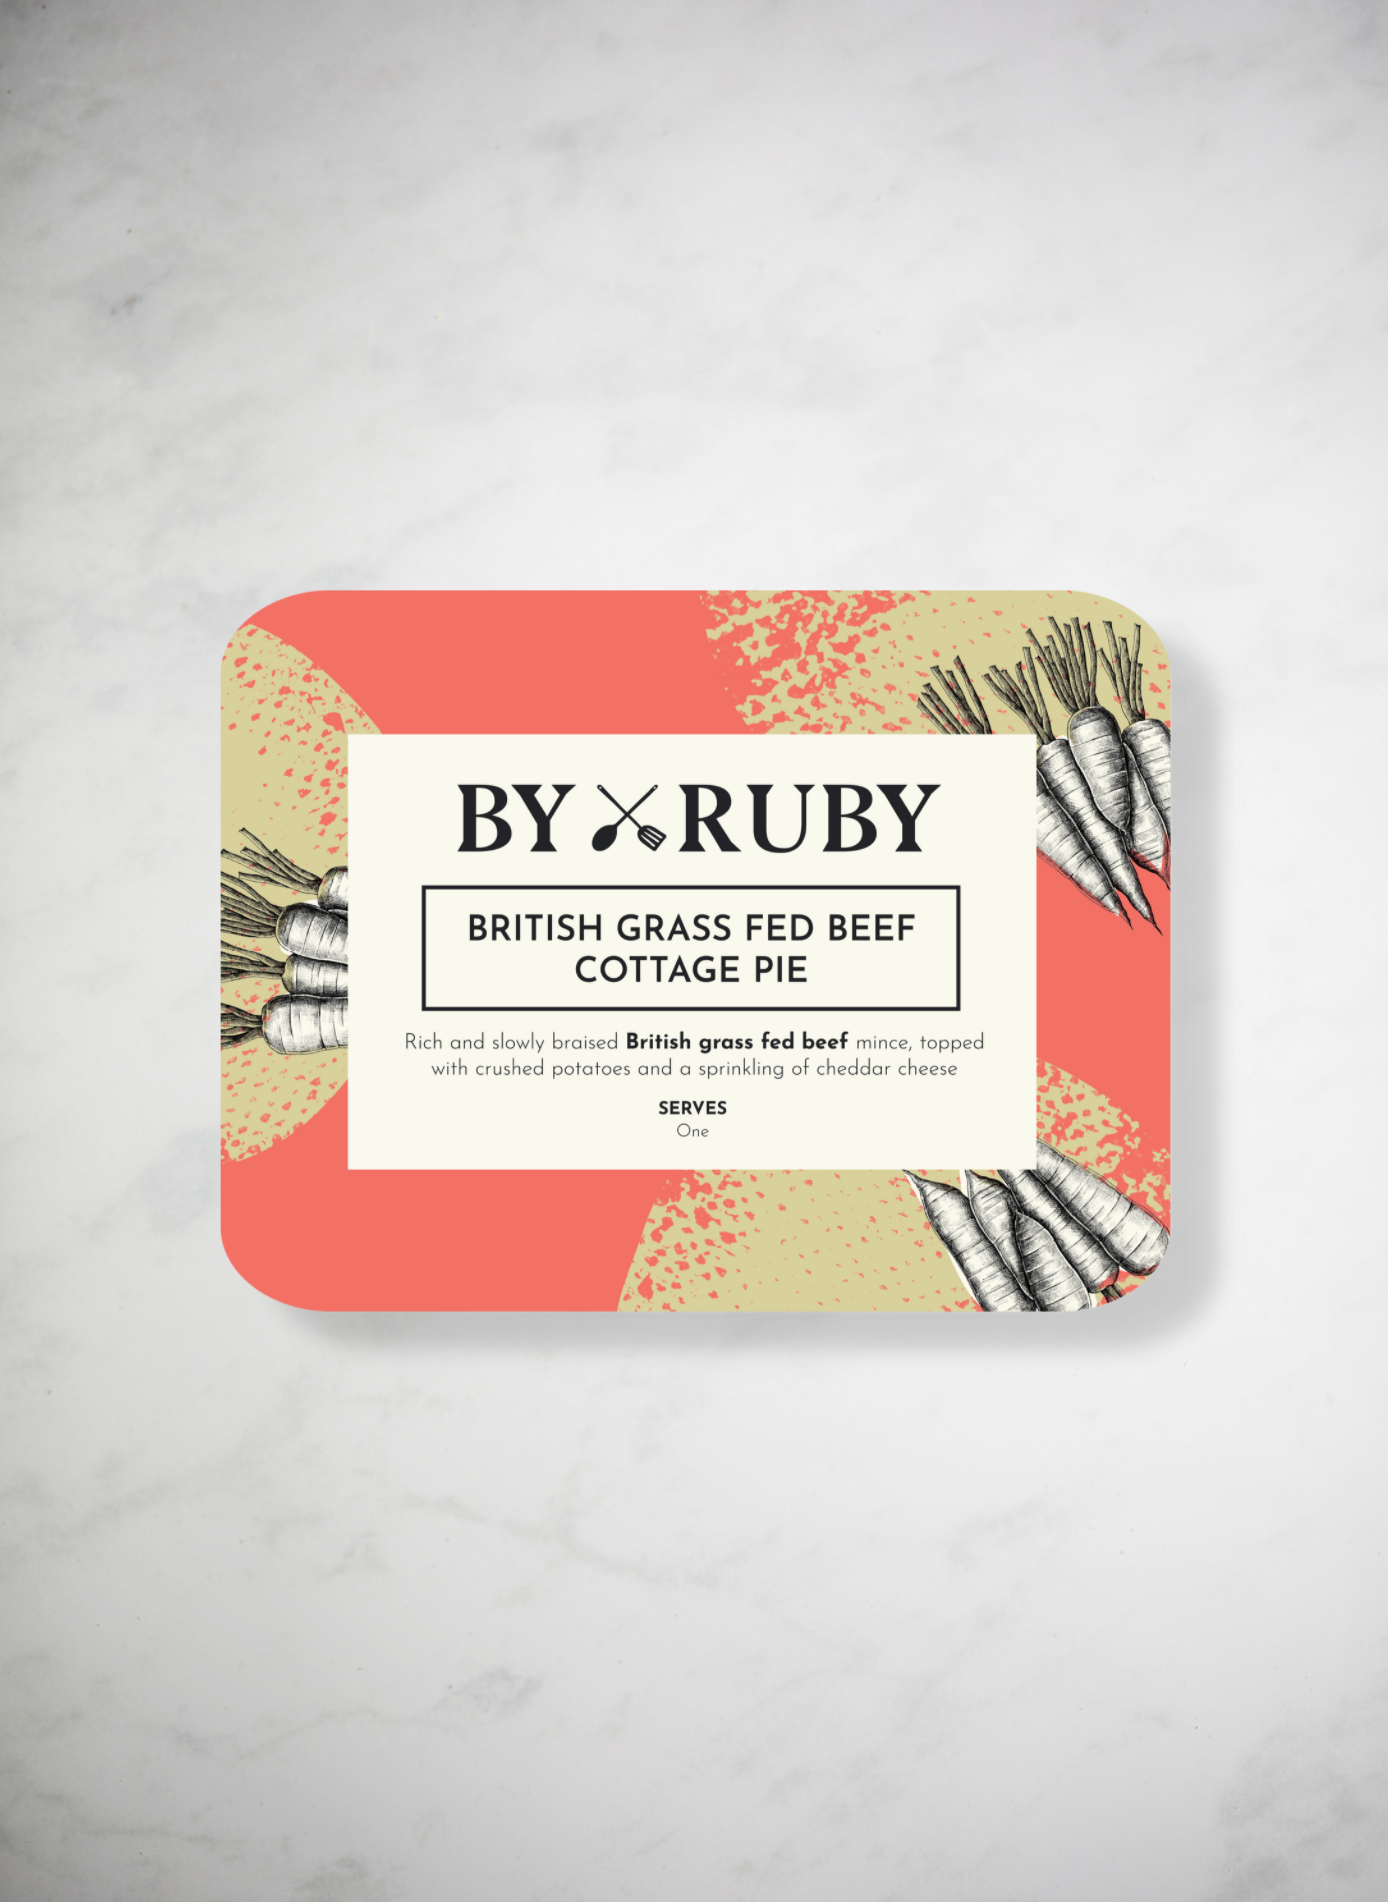 British grass fed beef cottage pie